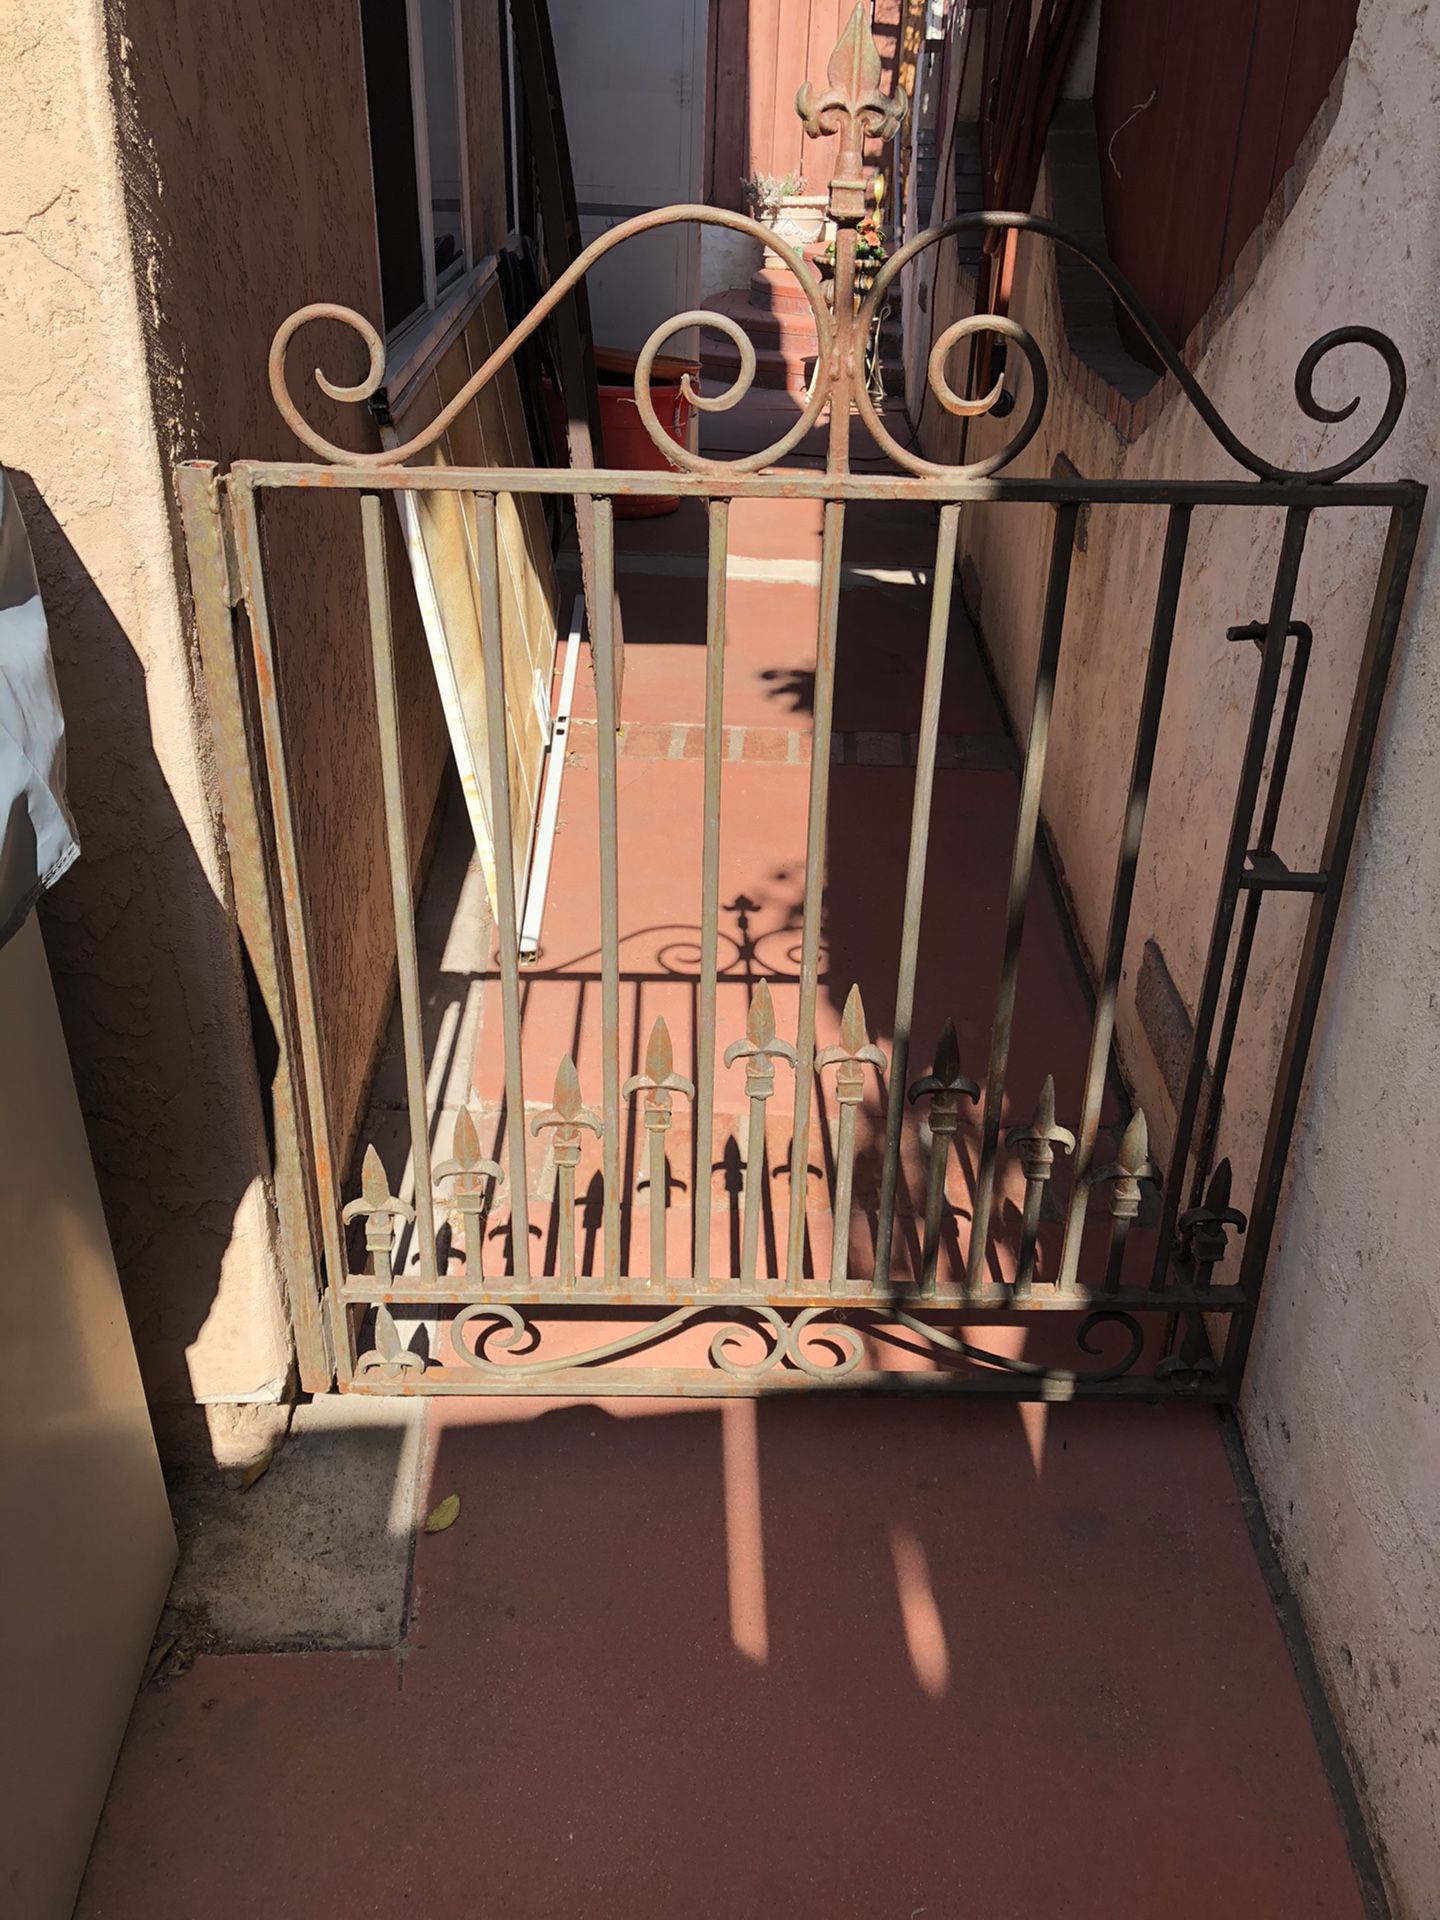 Wrought iron gates